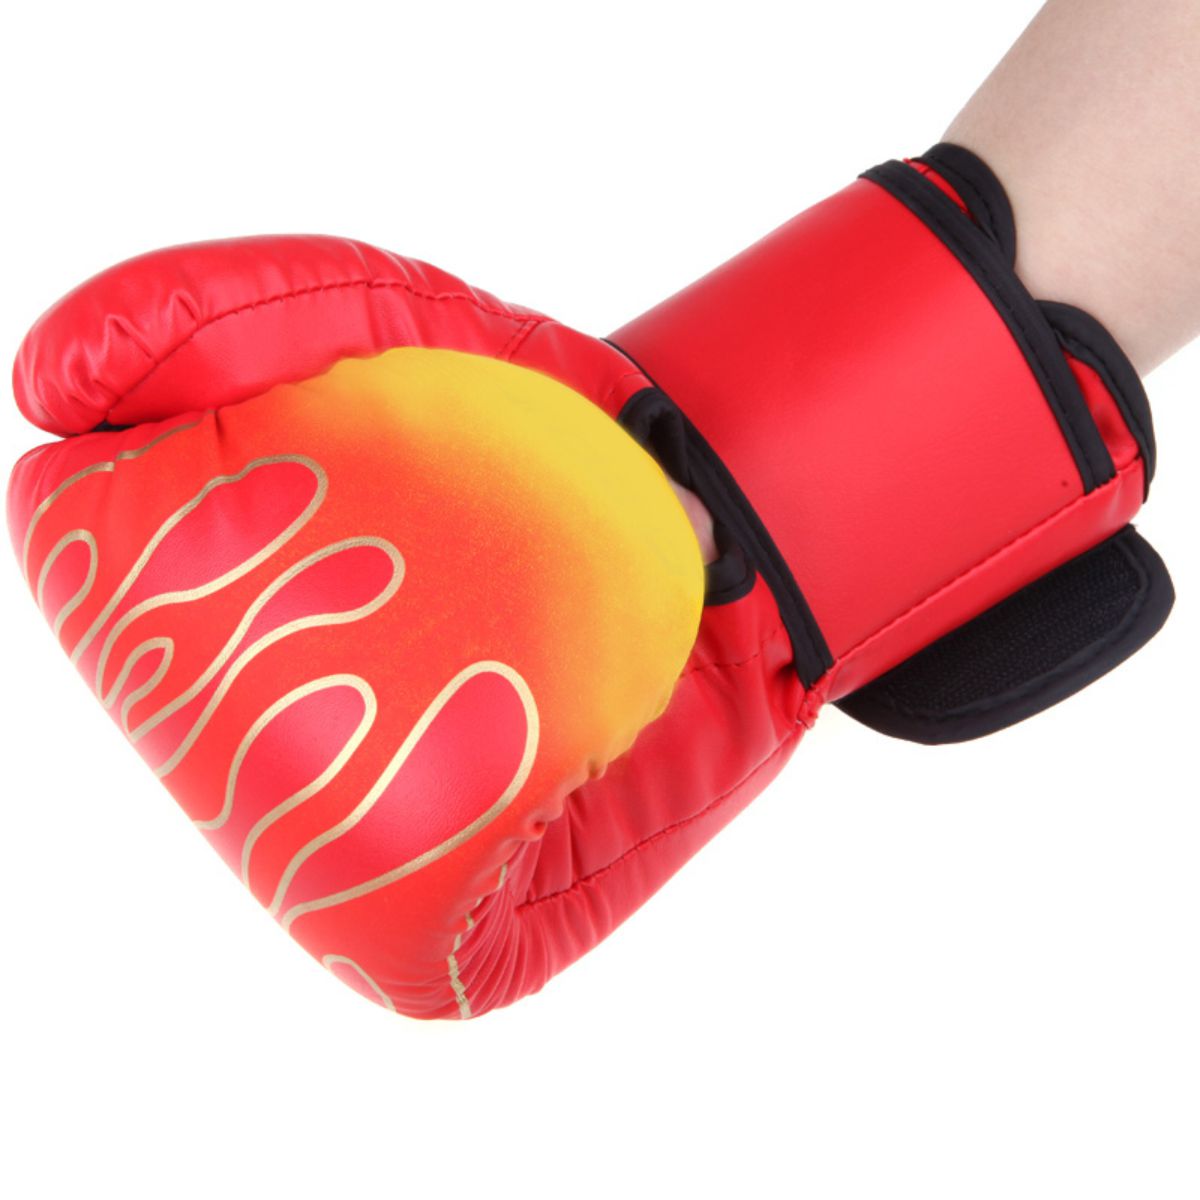 фото Боксерские перчатки, цвет красный, вес 8 унций, atlanterra at-bx-01